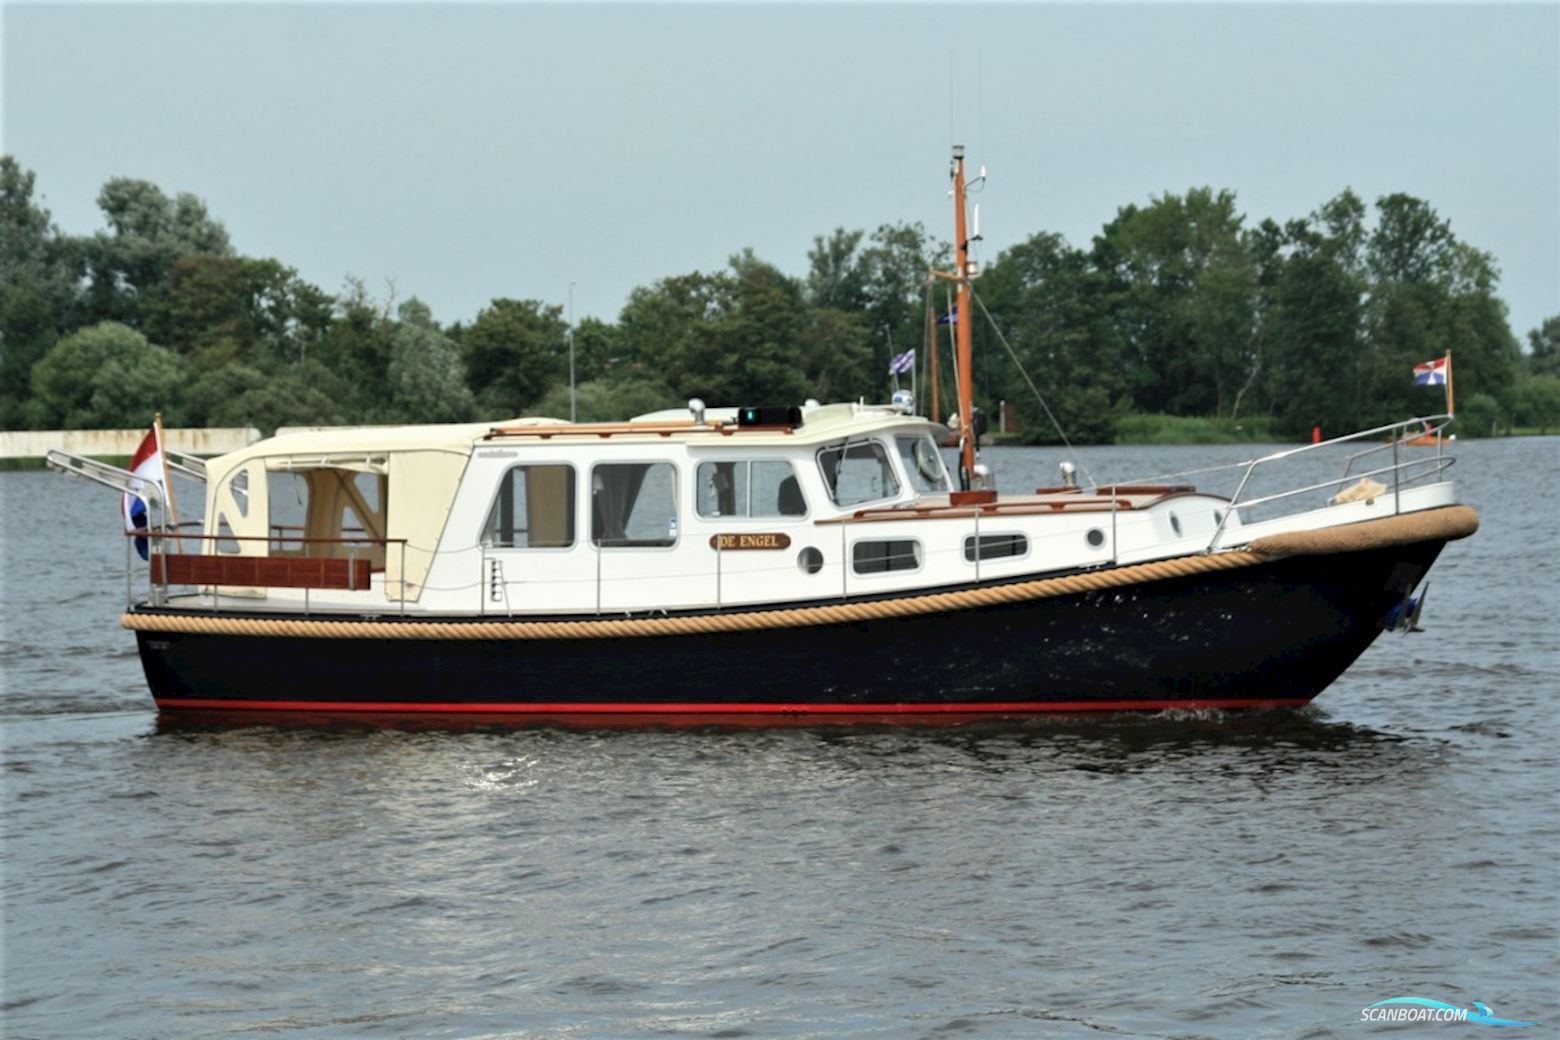 Valkvlet 11.30 OK Motorboot 1988, mit Ford Lehman motor, Niederlande